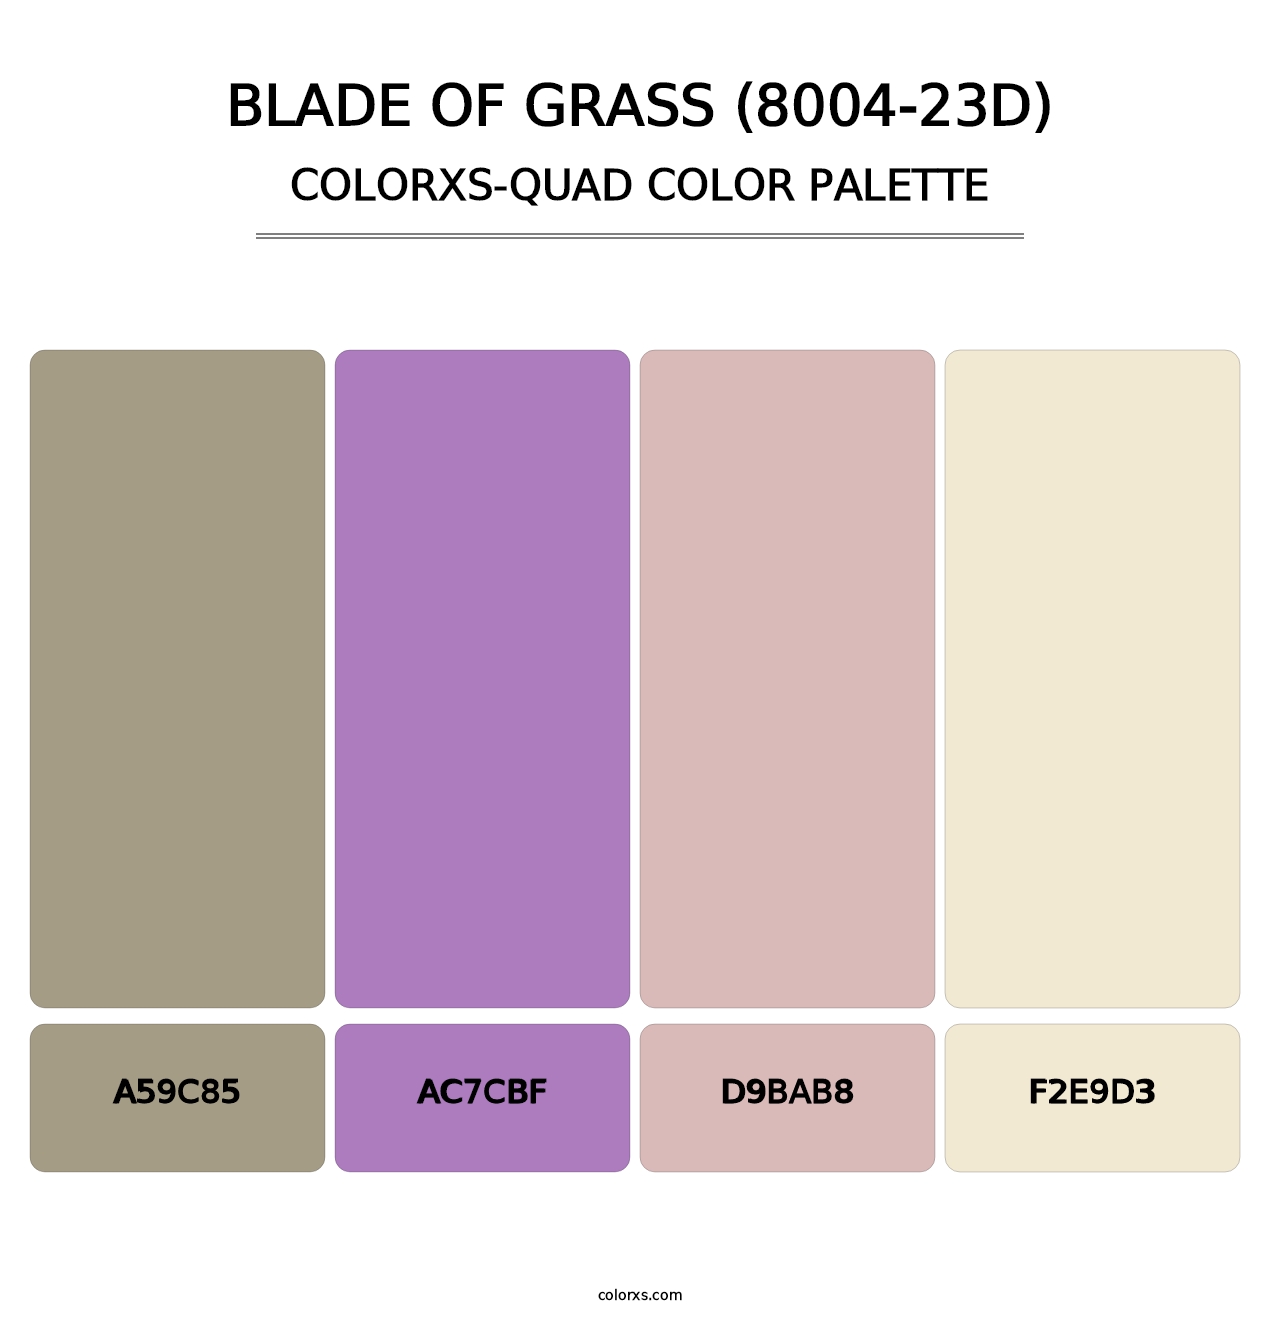 Blade of Grass (8004-23D) - Colorxs Quad Palette